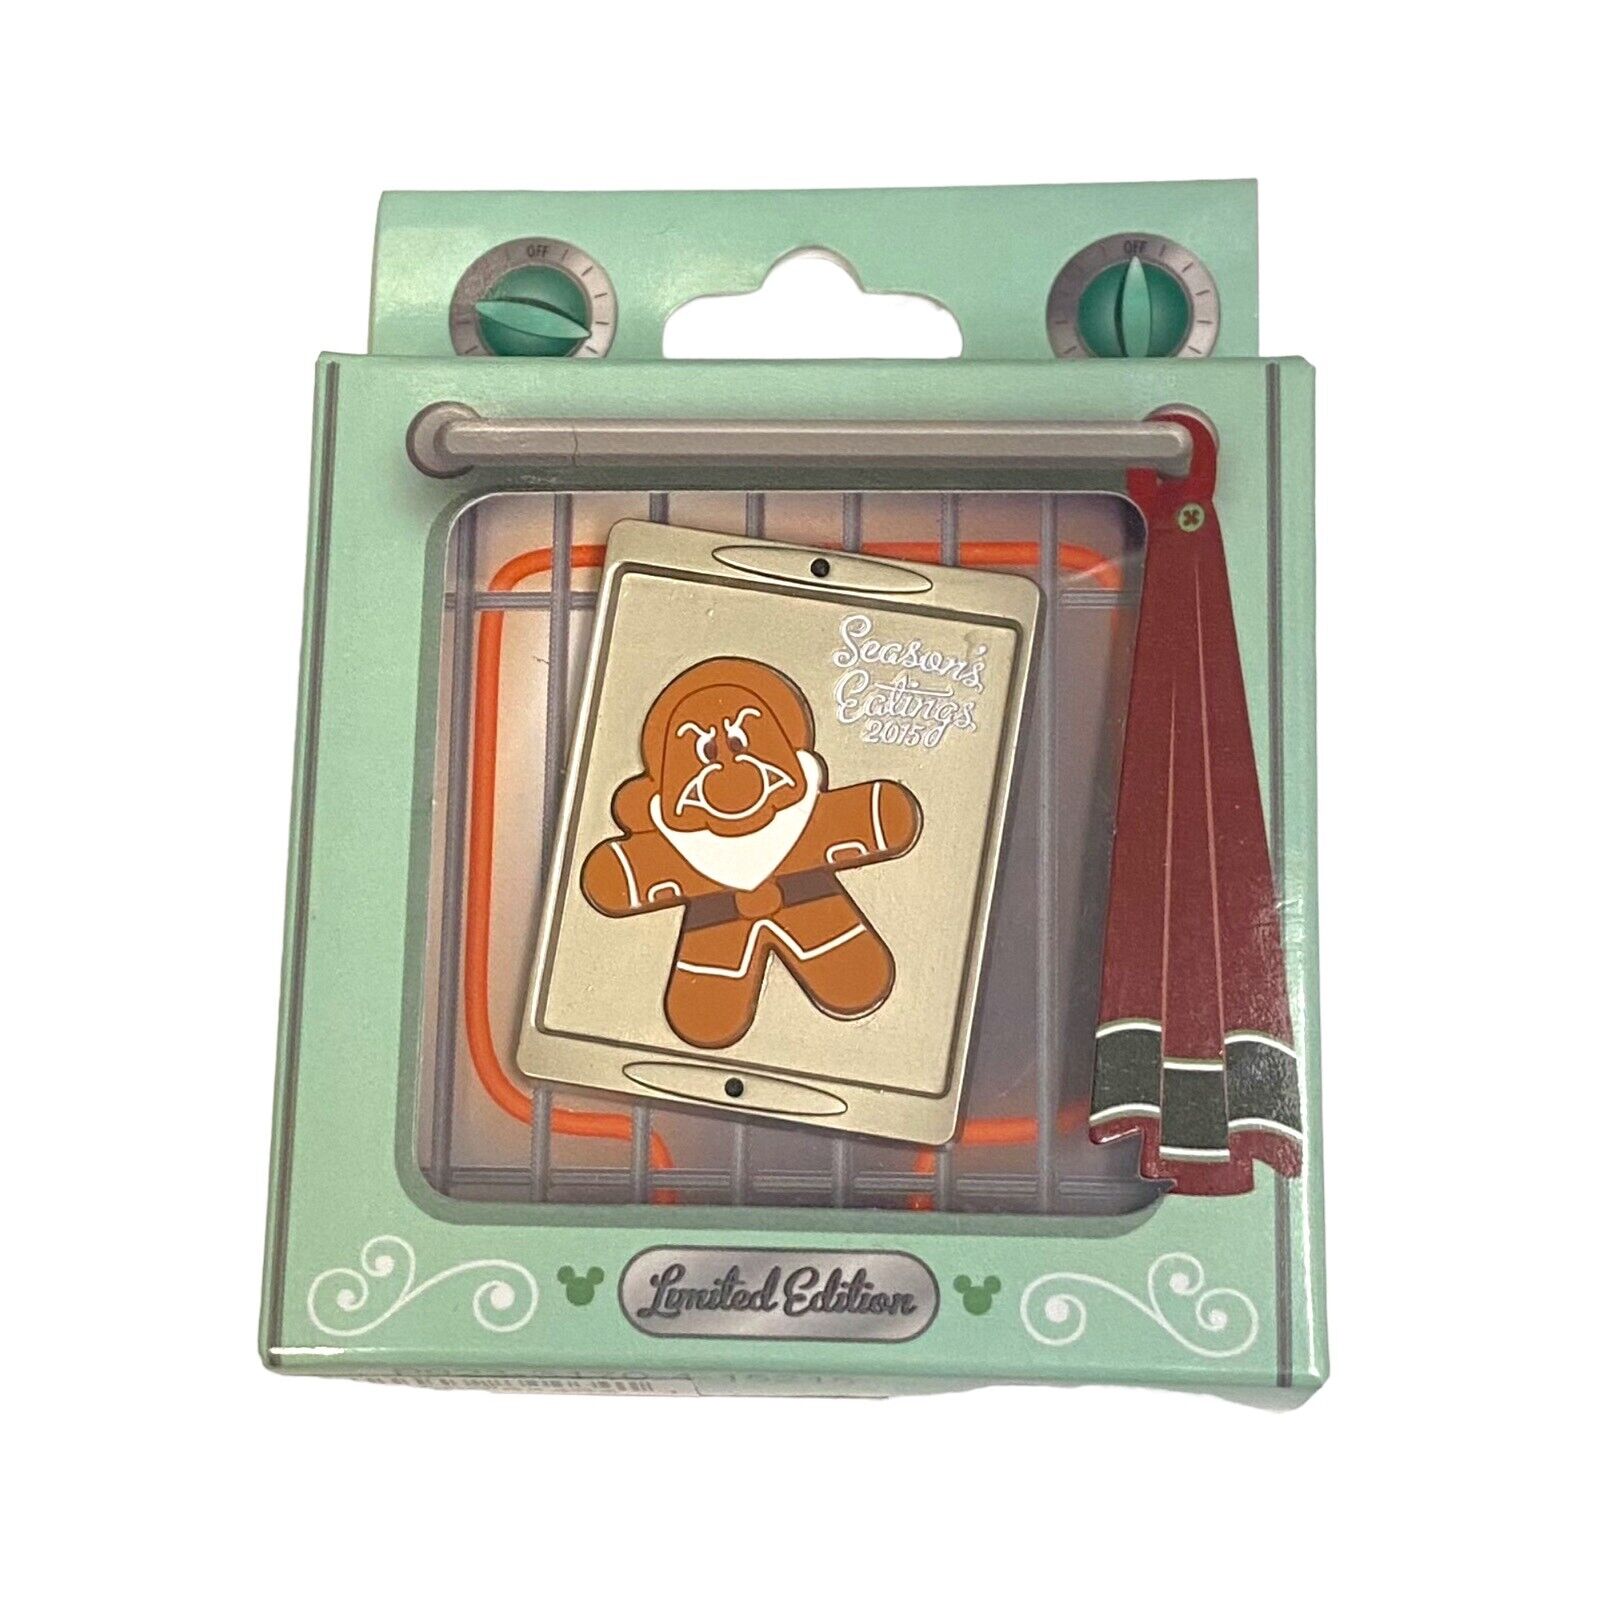 2015 Disney Parks Season's Eatings Cookie Pin - Grumpy